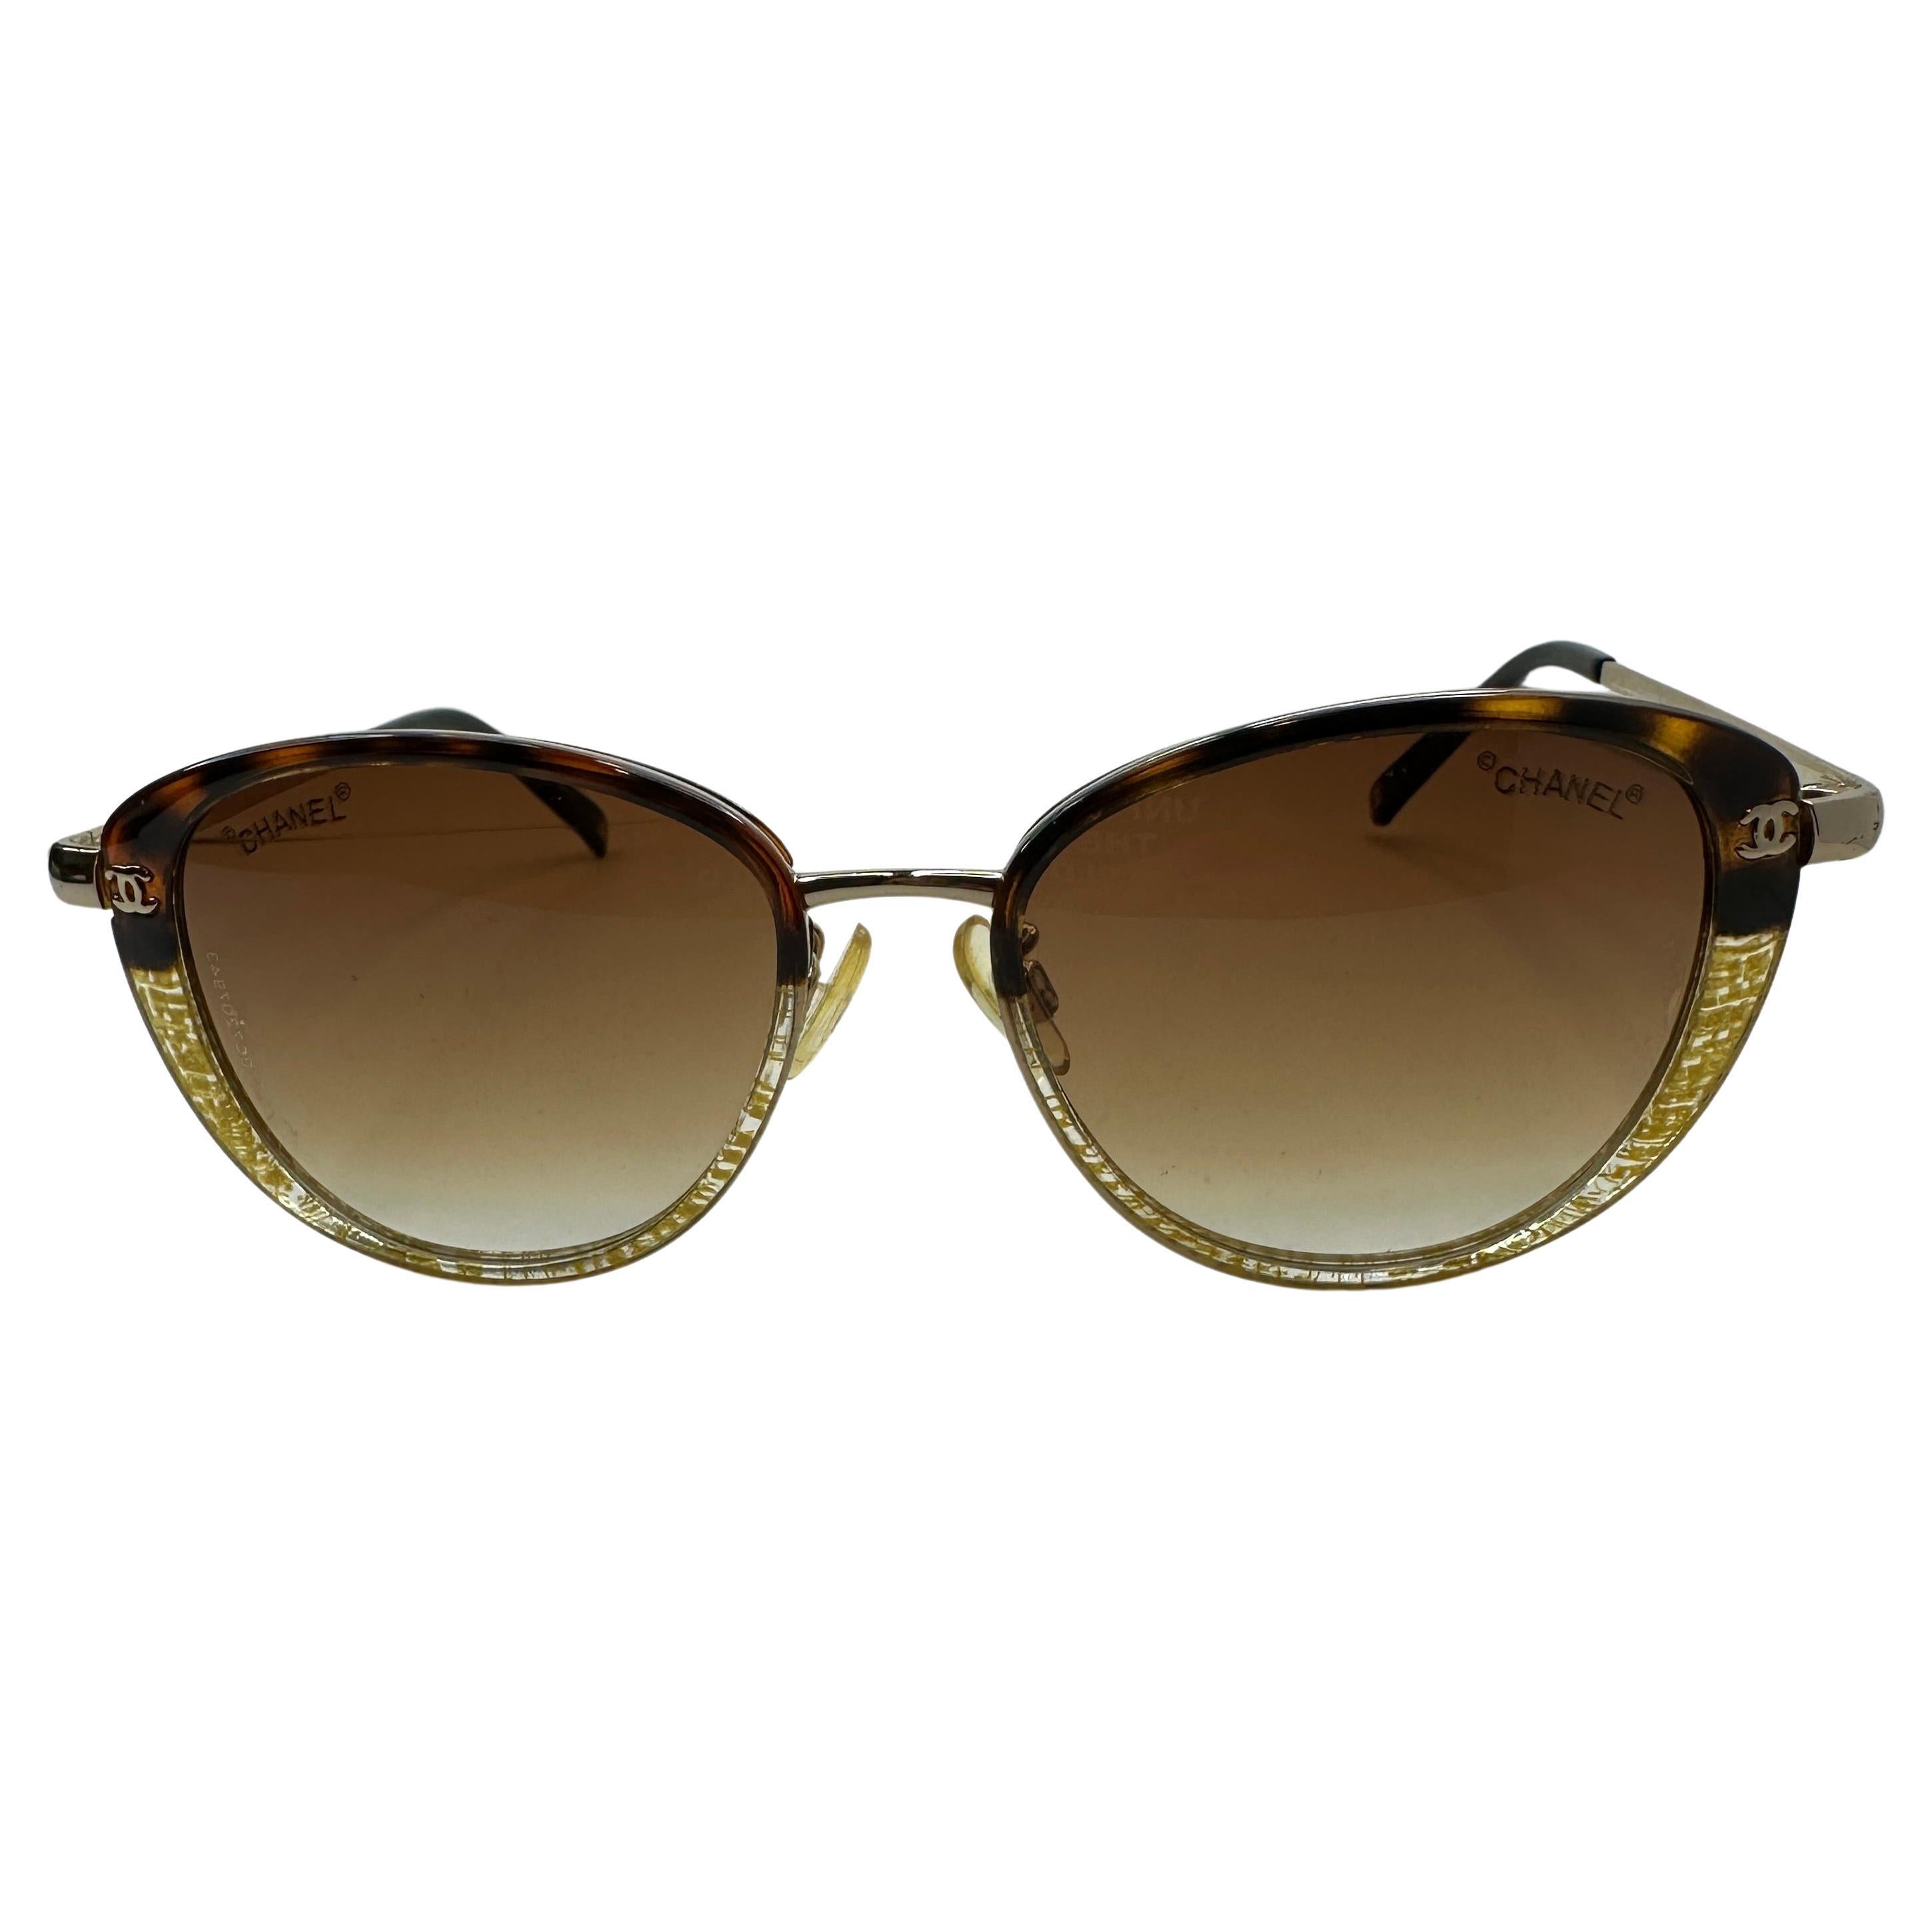 Chanel Abstrakte Sonnenbrille aus Gold und Schildpatt mit Goldbeschlägen, akzentuiert mit Goldbeschlägen im Angebot